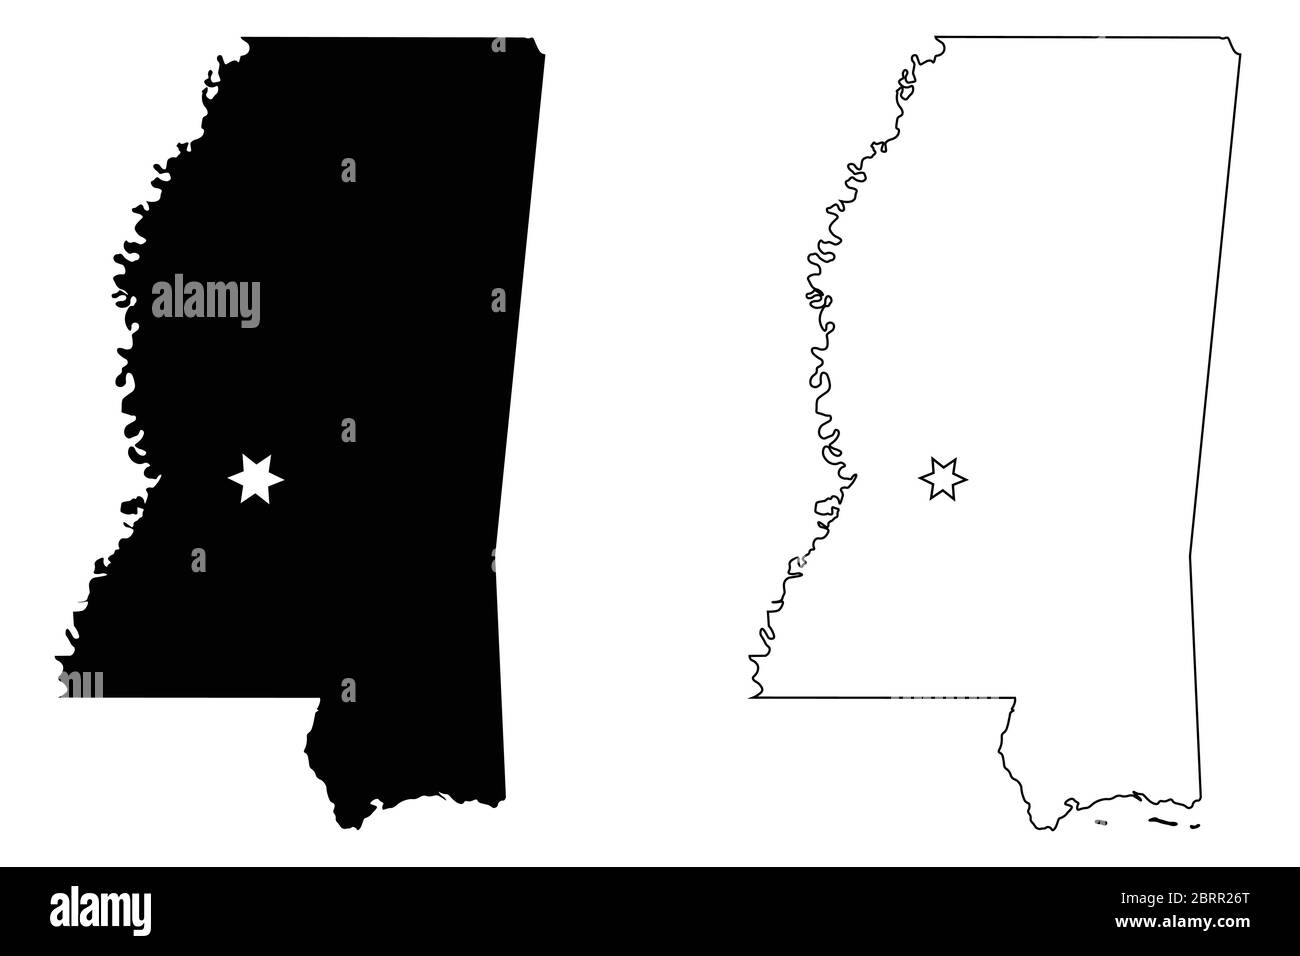 Mississippi MS State Karte USA mit Capital City Star in Jackson. Schwarze Silhouette und Umriss isoliert auf weißem Hintergrund. EPS-Vektor Stock Vektor